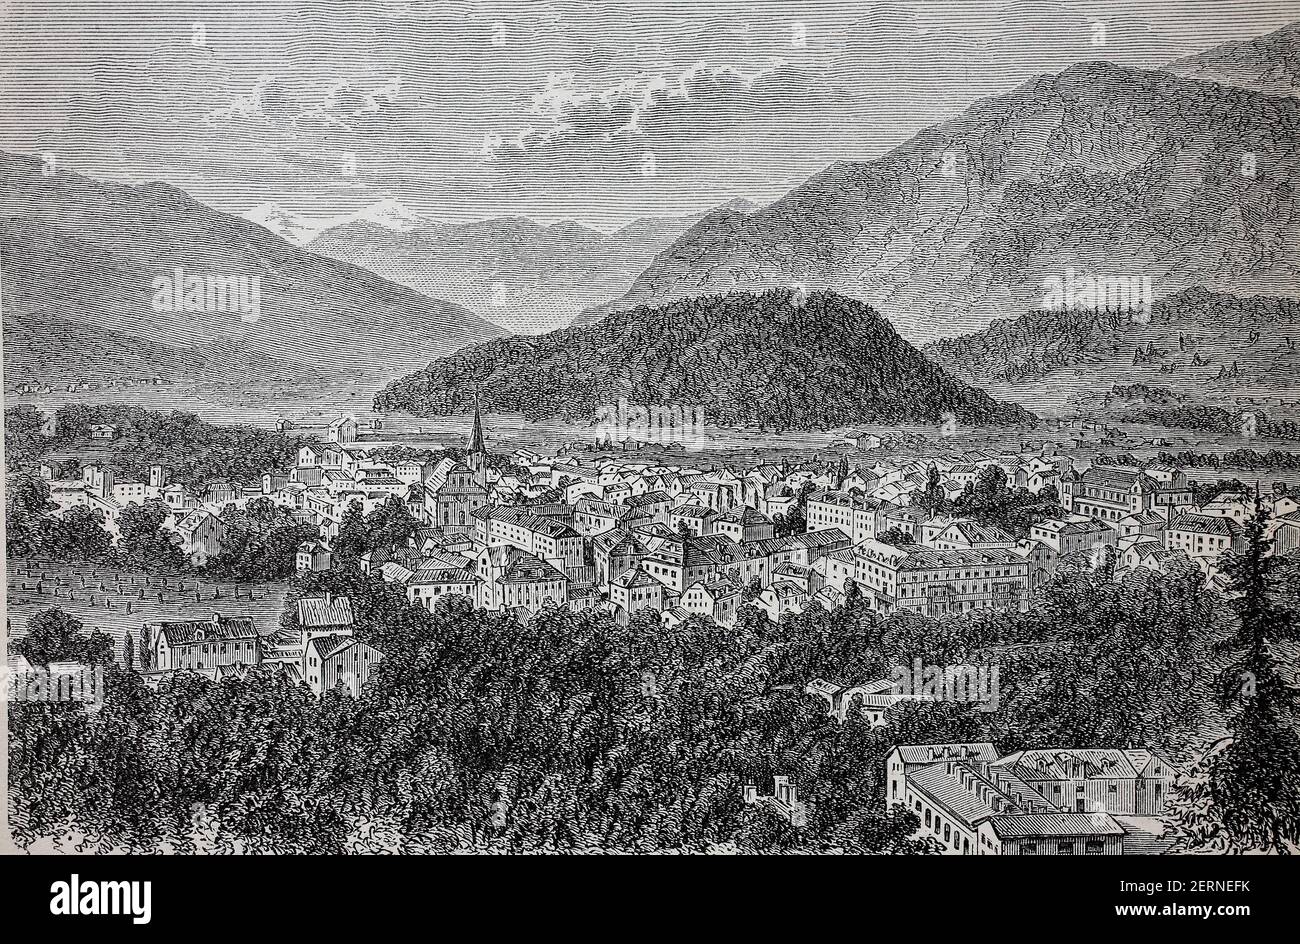 The town of Ischl, Bad Ischl, in Austria, in 1880  /  Die Stadt Ischl, Bad Ischl, in oesterreich, im Jahre 1880, Historisch, historical, digital impro Stock Photo